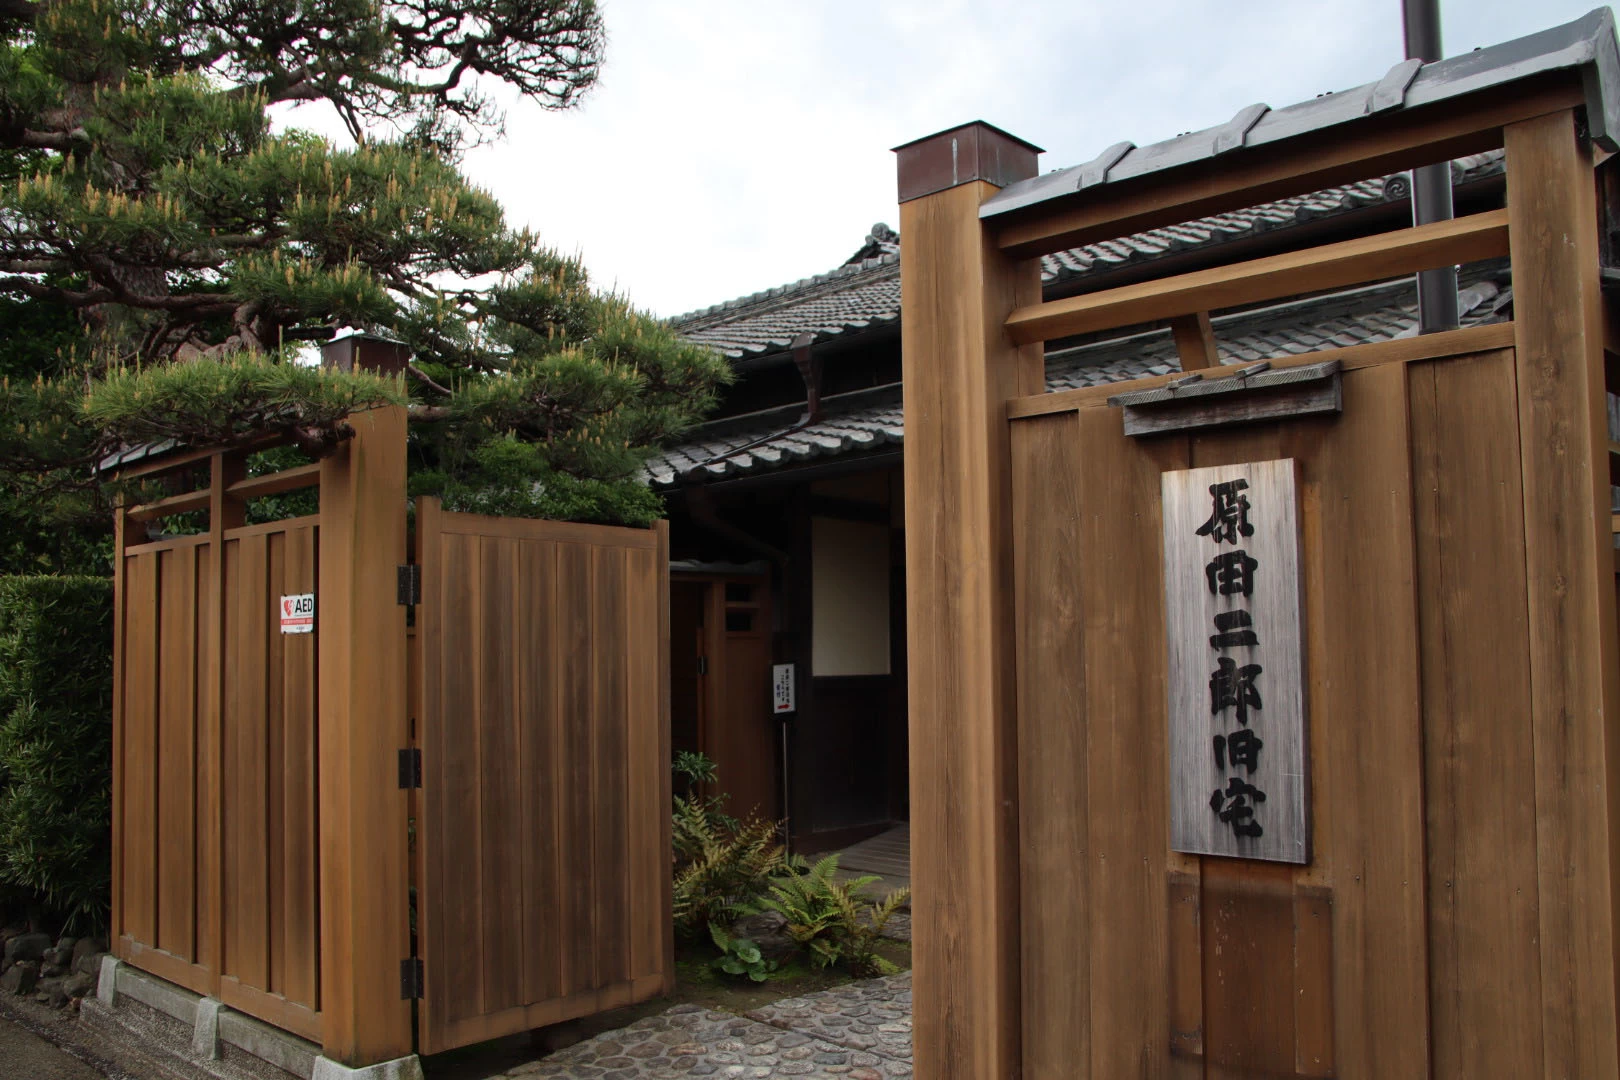 原田二郎旧宅は江戸時代末期の武家屋敷を明治期に改築したもの